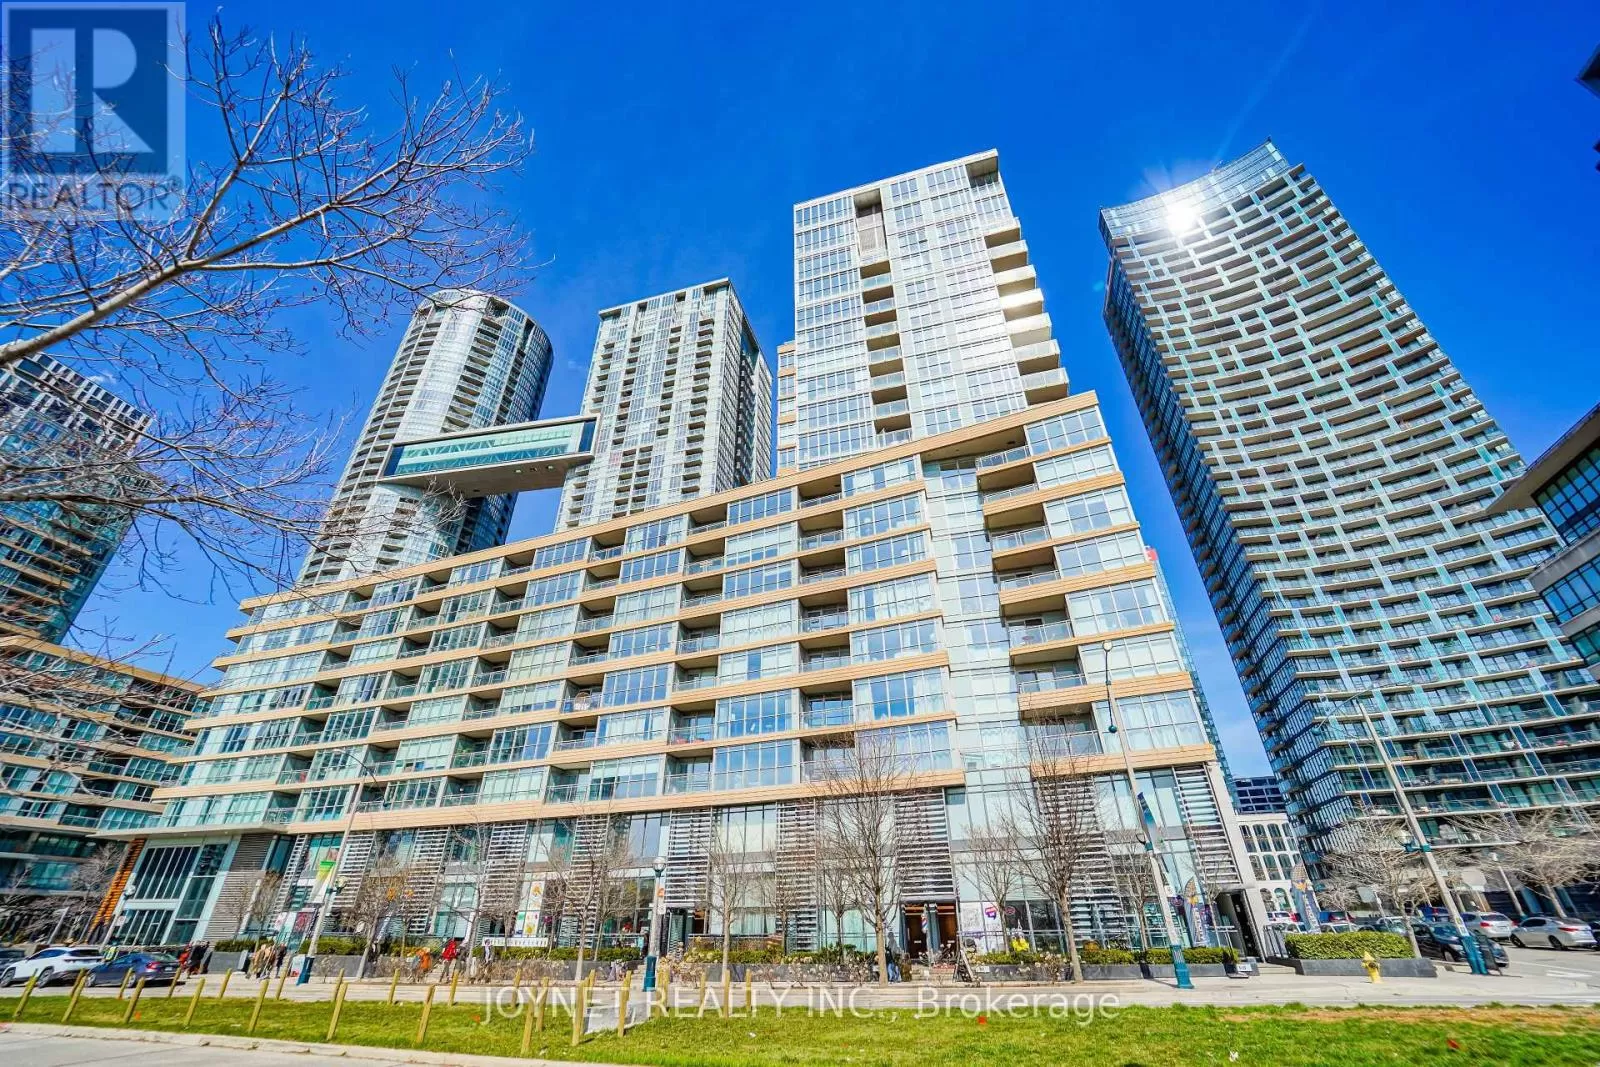 Apartment for rent: 516 - 10 Capreol Court, Toronto, Ontario M5V 4B3